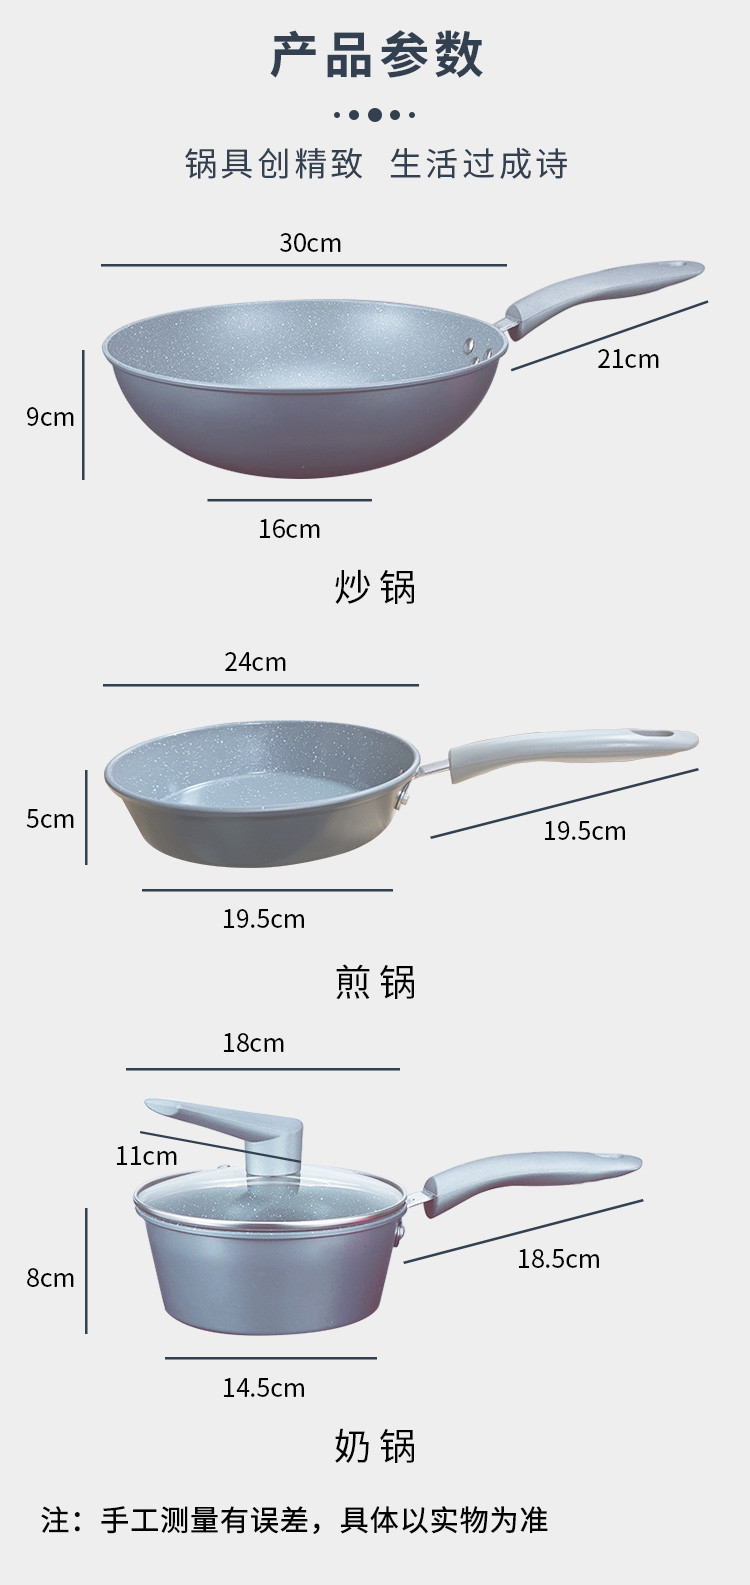 宝珀 皇冠陶晶麦饭石三件套 30cm炒锅、24cm煎锅、18cm奶锅